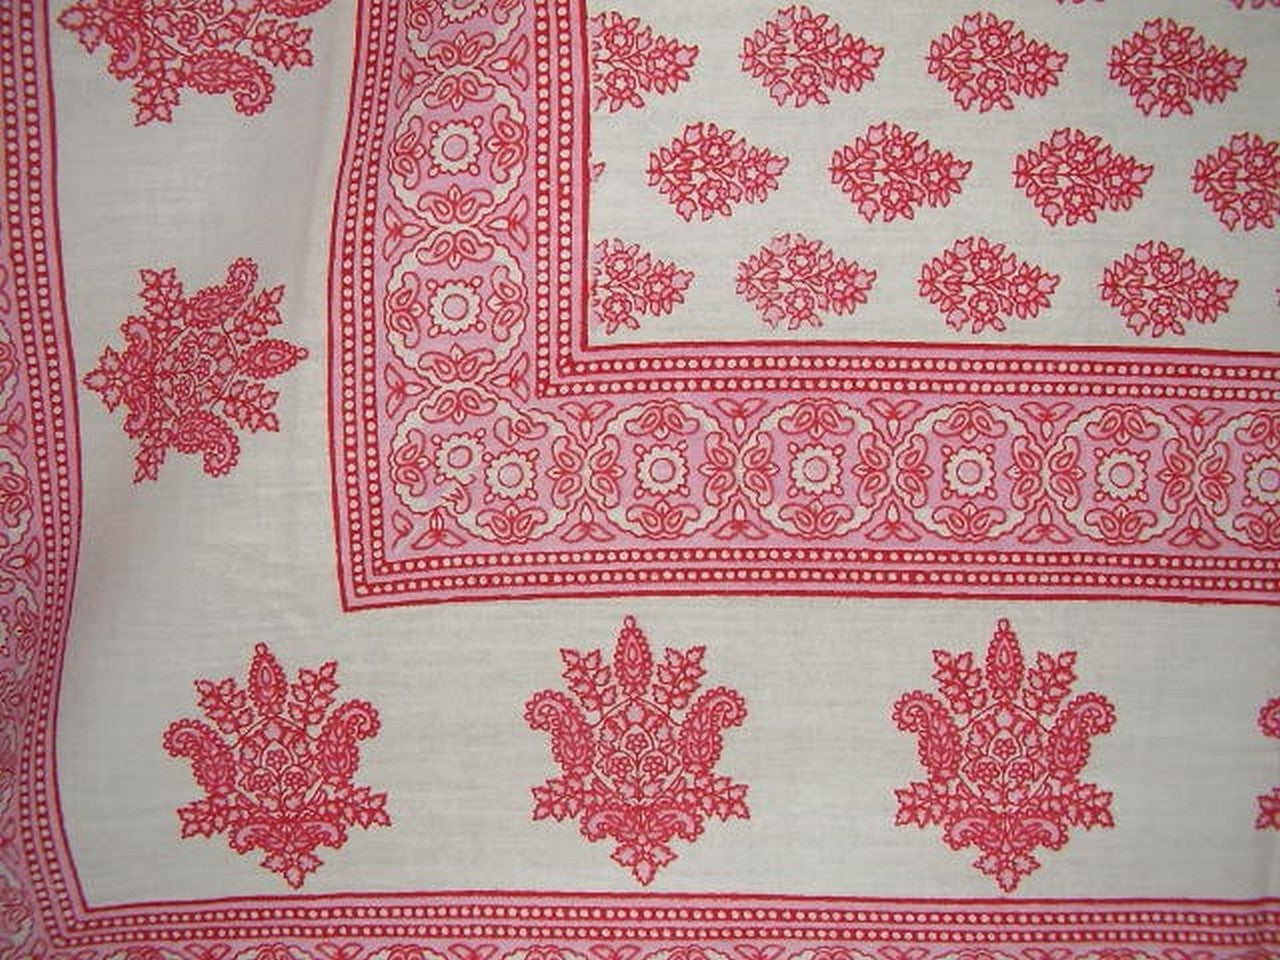 Monotone Buti Block Print Tapestry Cotton Spread 106" x 70" Twin Red